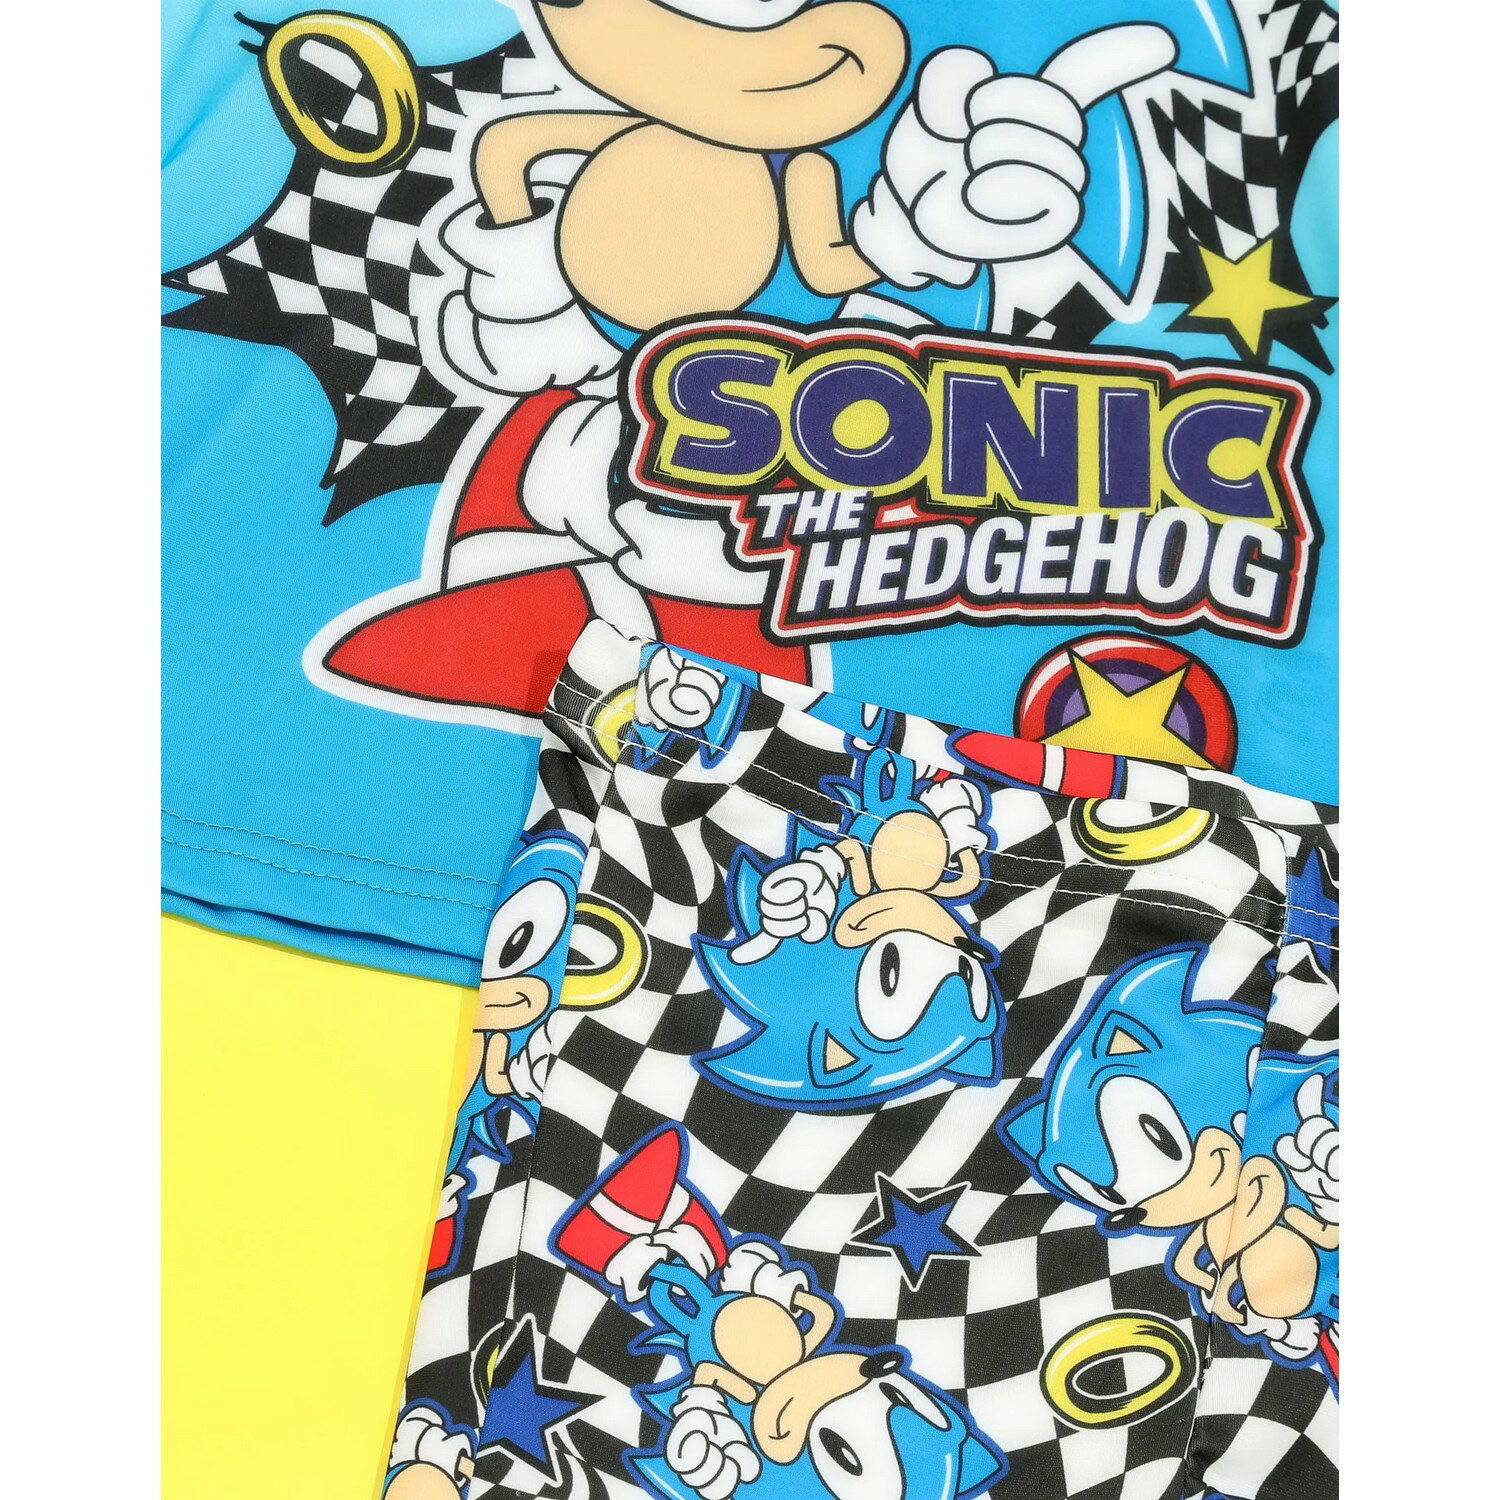 ソニック・ザ・ヘッジホッグ Sonic The Hedgehog オフィシャル商品 キッズ・子供 ボーイズ リング セパレート 水着 スイムスーツ 【海外通販】